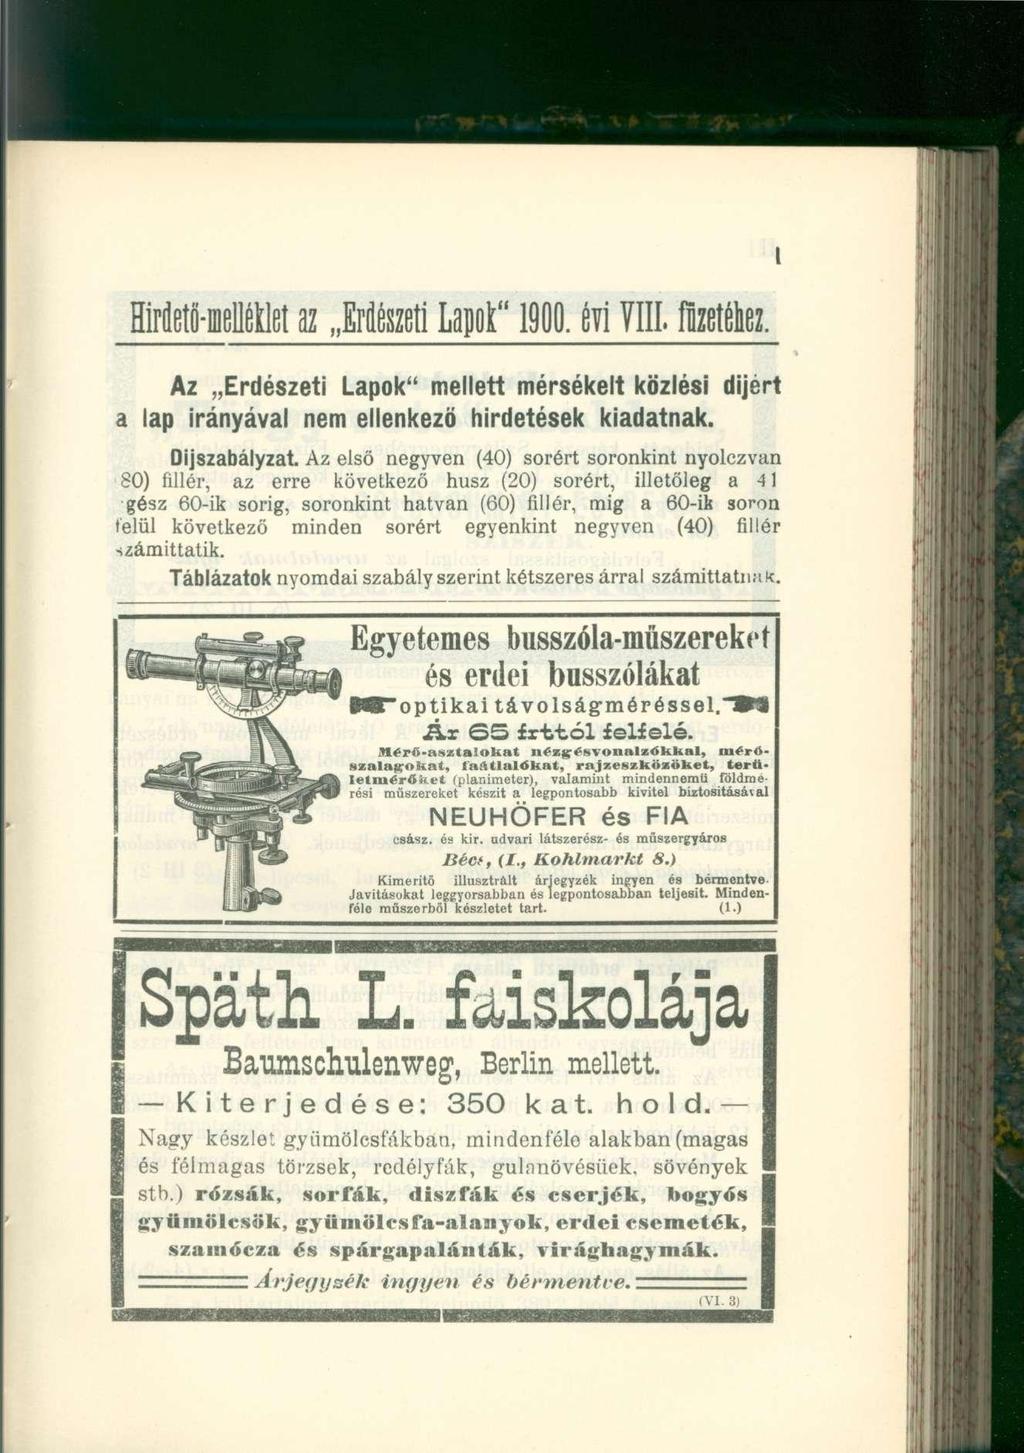 Hirfletö-meUéklet az Erdészet i Lapot" 1900. év i VIII. ftoétaz. Az Erdészeti Lapok" mellett mérsékelt közlési dijért a lap irányával nem ellenkező hirdetések kiadatnak. Díjszabályzat.